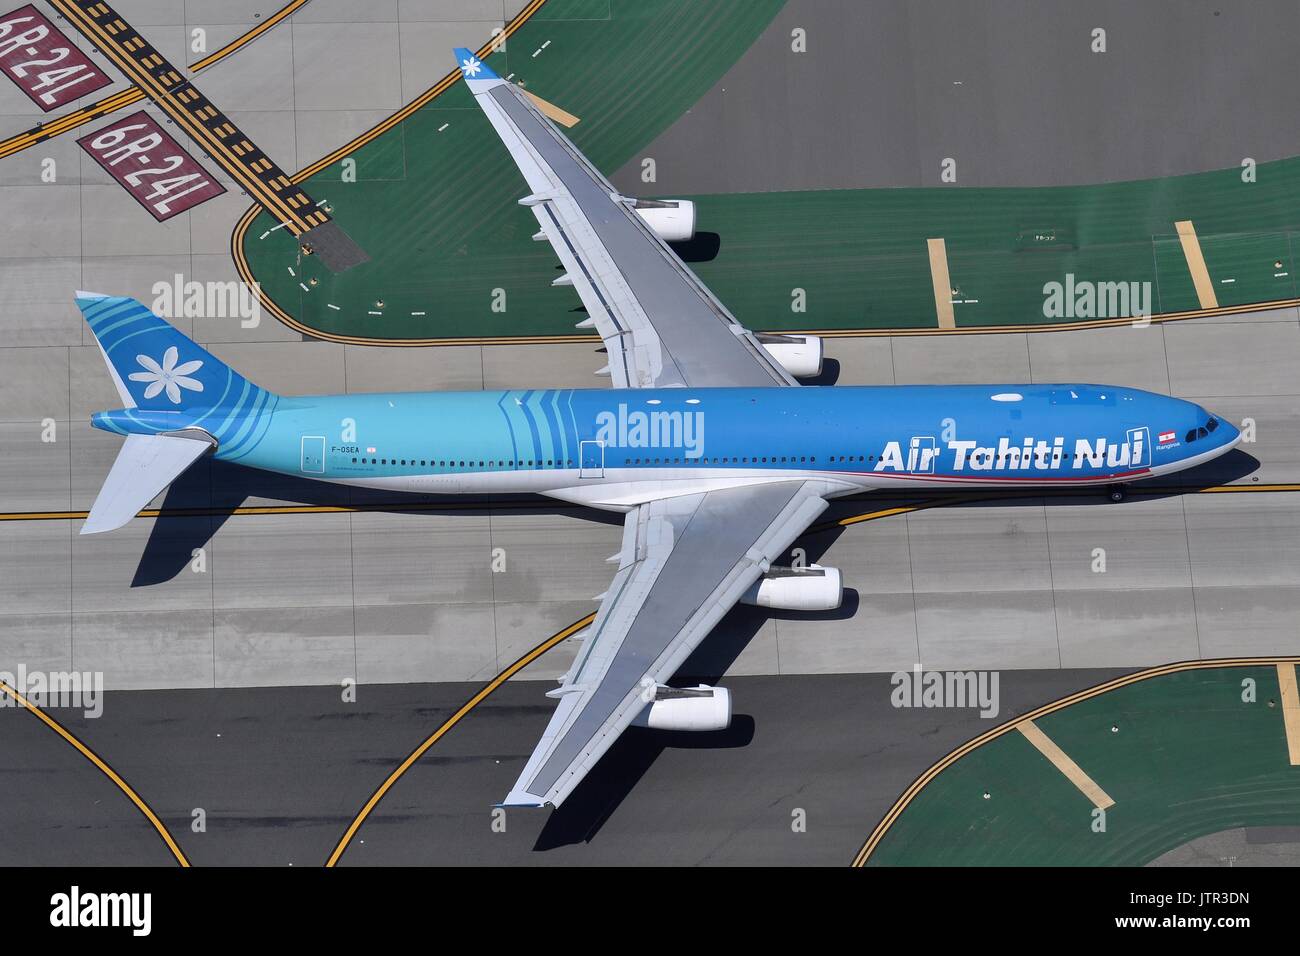 AIR TAHITI NUI AIRBUS A340-300 Stockfoto